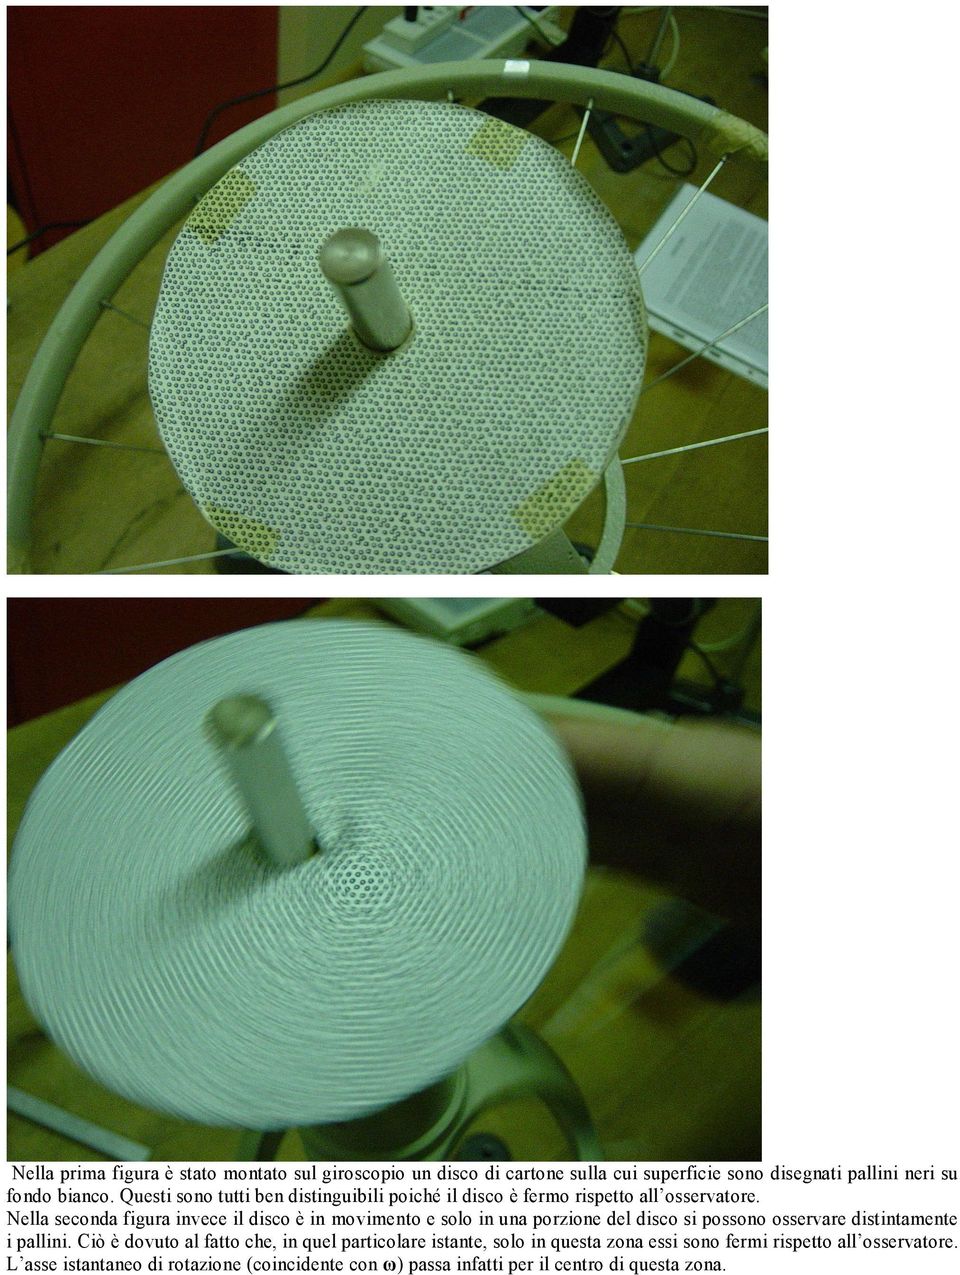 Nella seconda figura invece il disco è in movimento e solo in una porzione del disco si possono osservare distintamente i pallini.